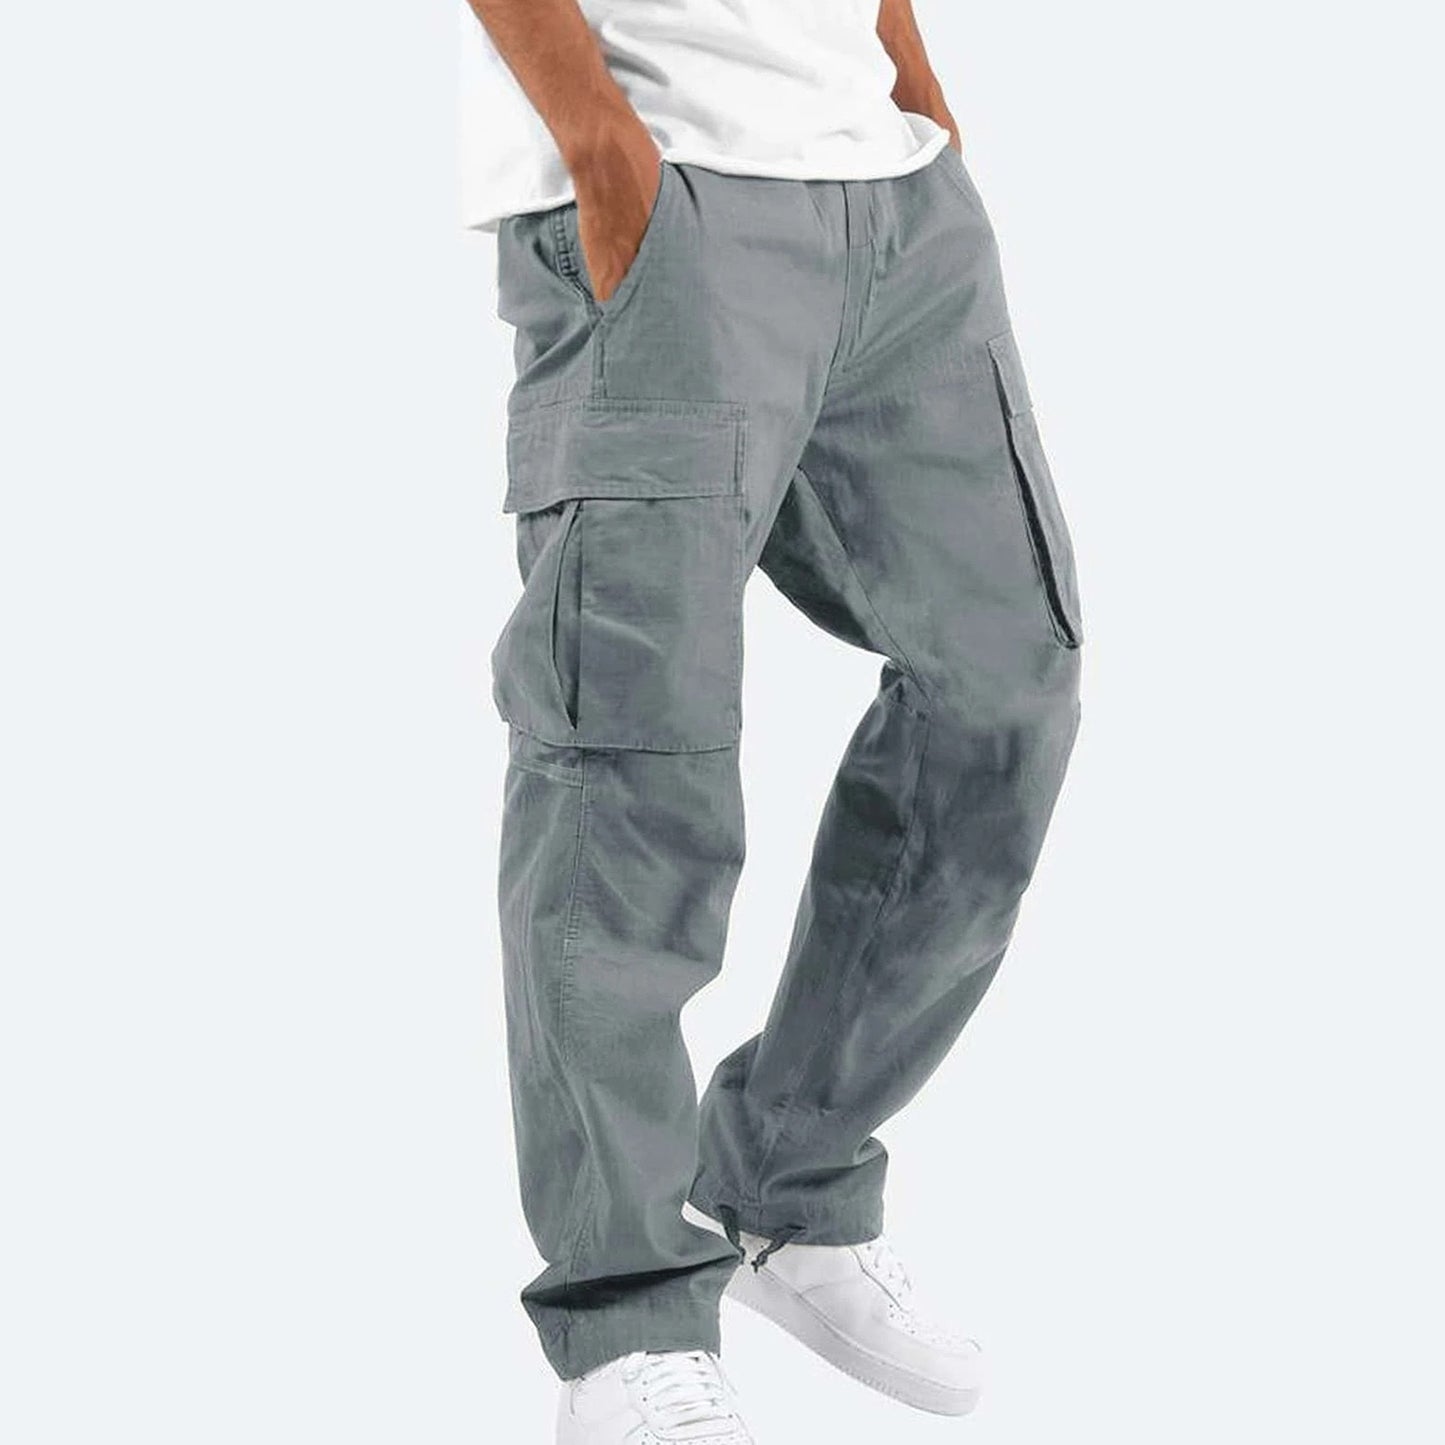 Men's Casual Cargo Pants